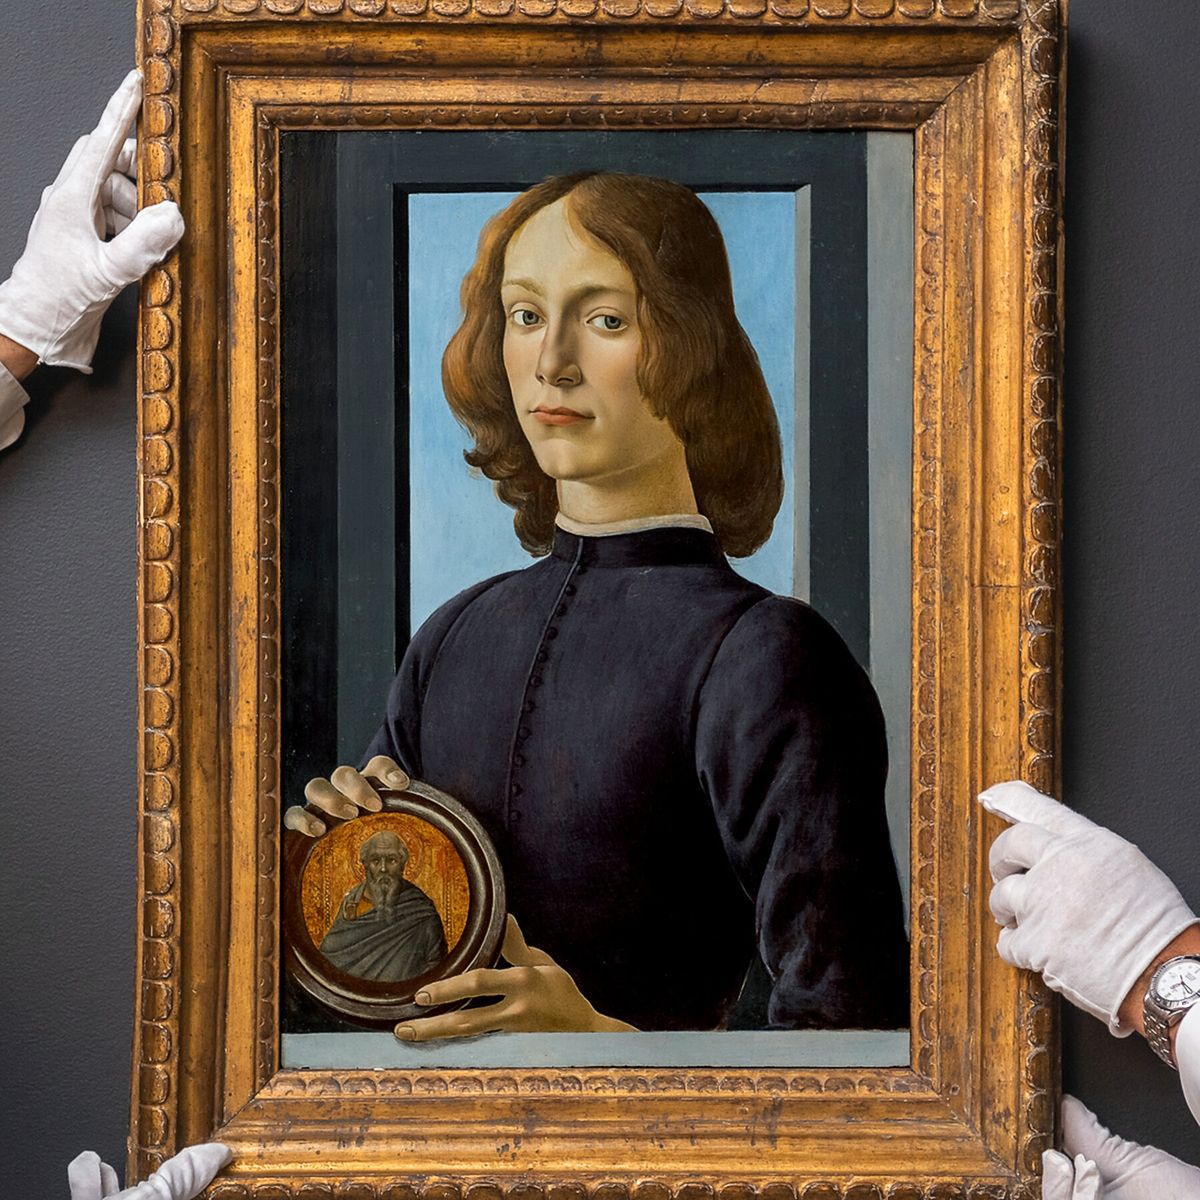 Картина «Портрет молодого человека с медальоном» Сандро Боттичелли, фото 2